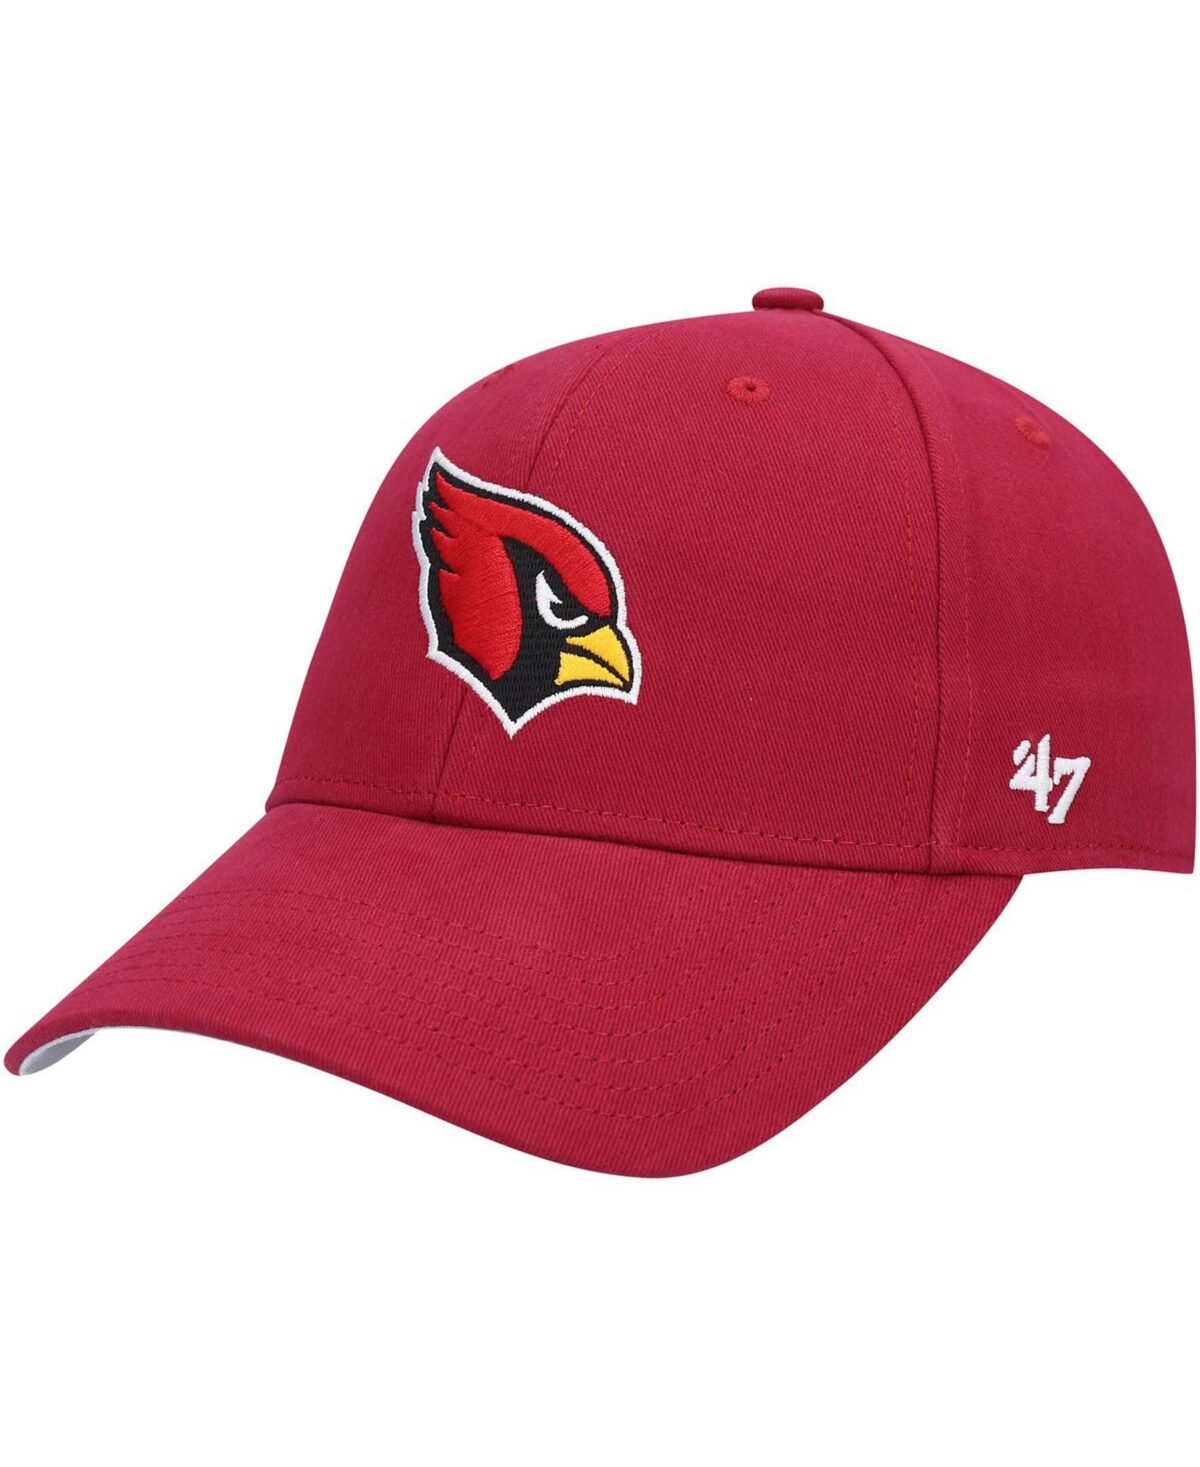 47 Brand Babies' Boys Cardinal Arizona Cardinals Basic Mvp Adjustable Hat